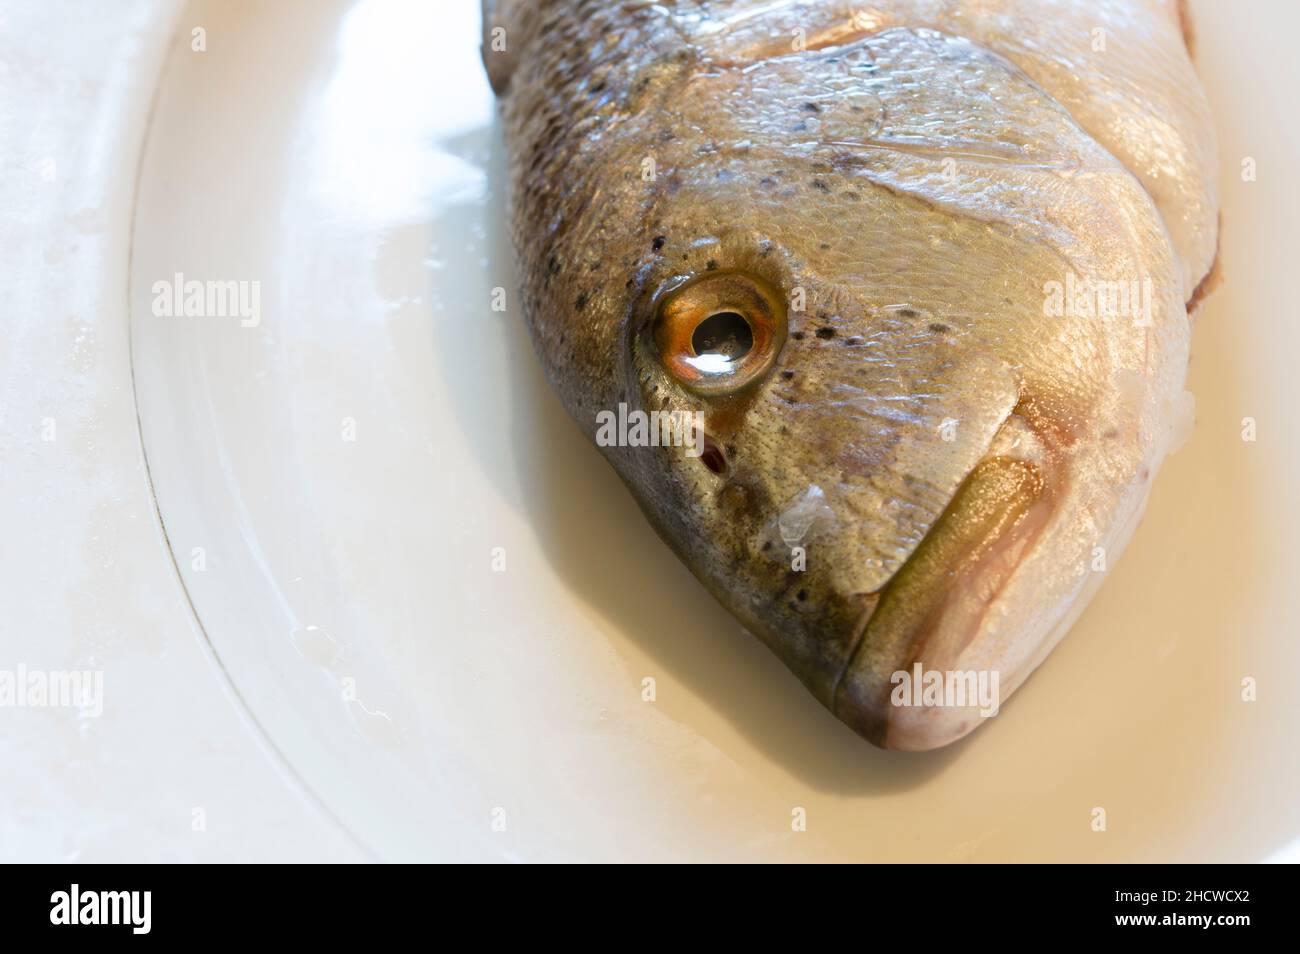 Tête de poisson d'eau salée Dentex Dentex, dentex commun sur une plaque blanche, fruits de mer crus de la mer Adriatique, cuisine dalmate Banque D'Images